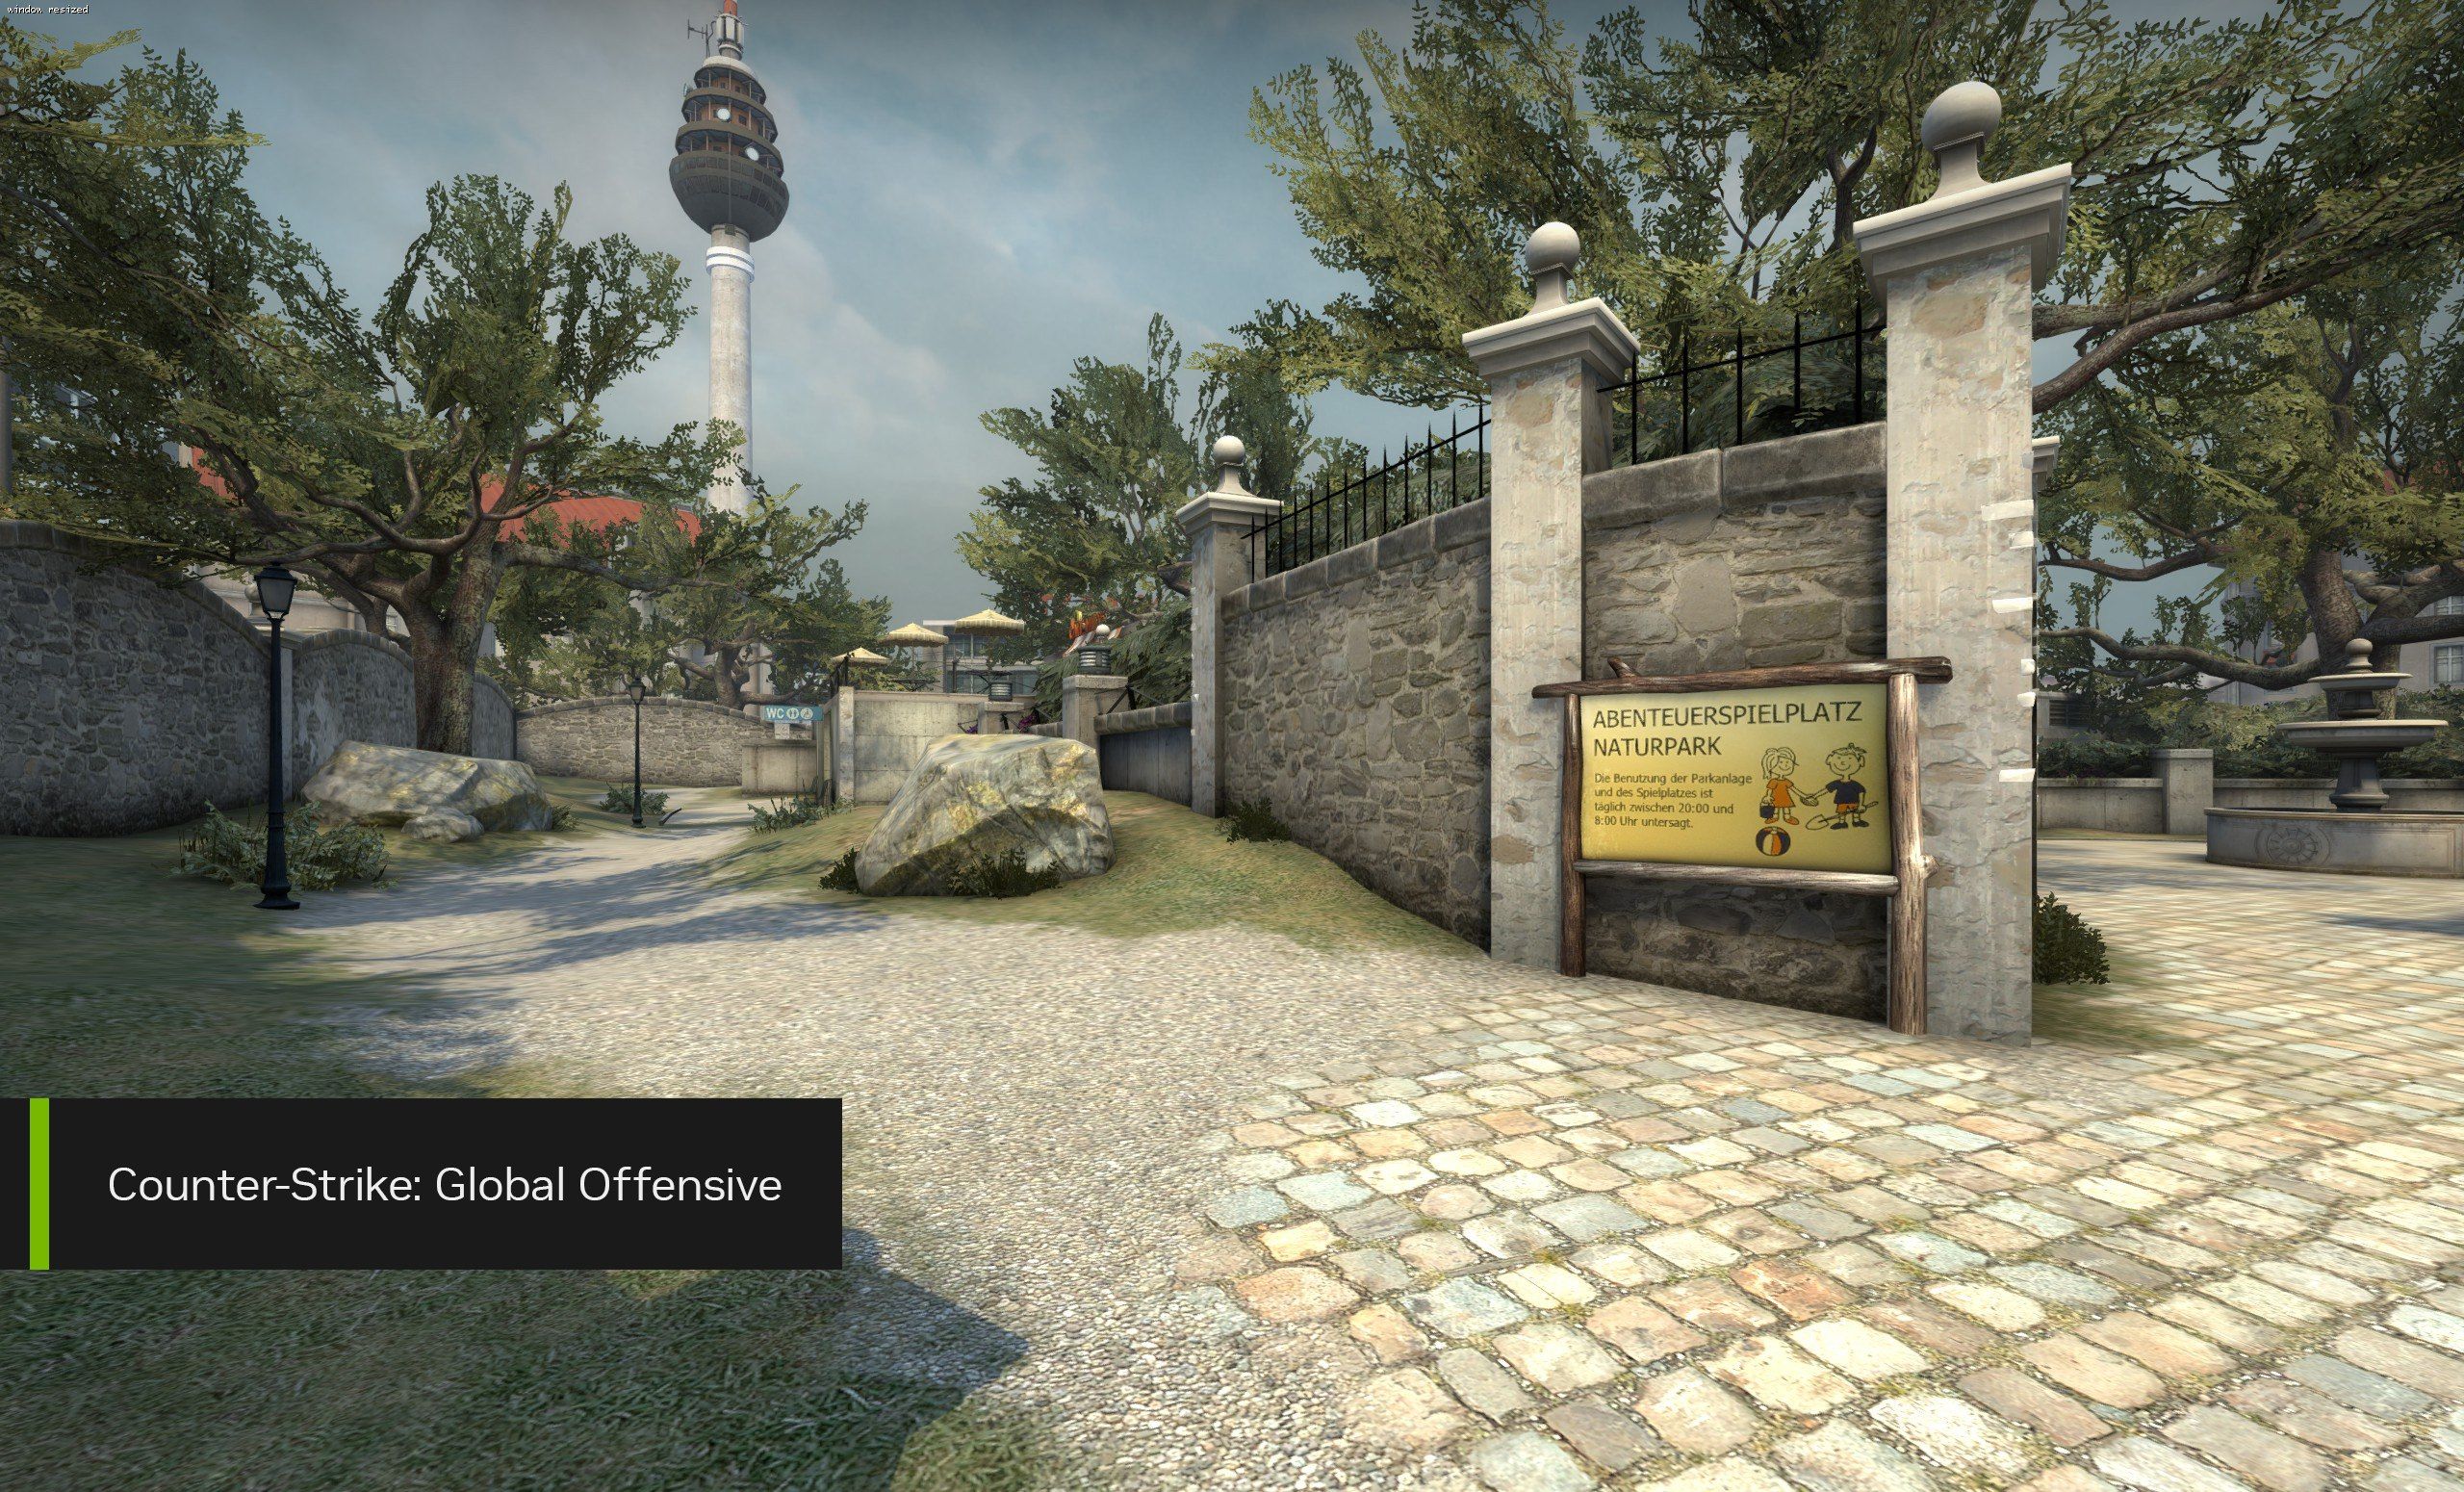 Counter Strike 2 podría ser una realidad, los nuevos drivers de NVIDIA  apuntan a ello